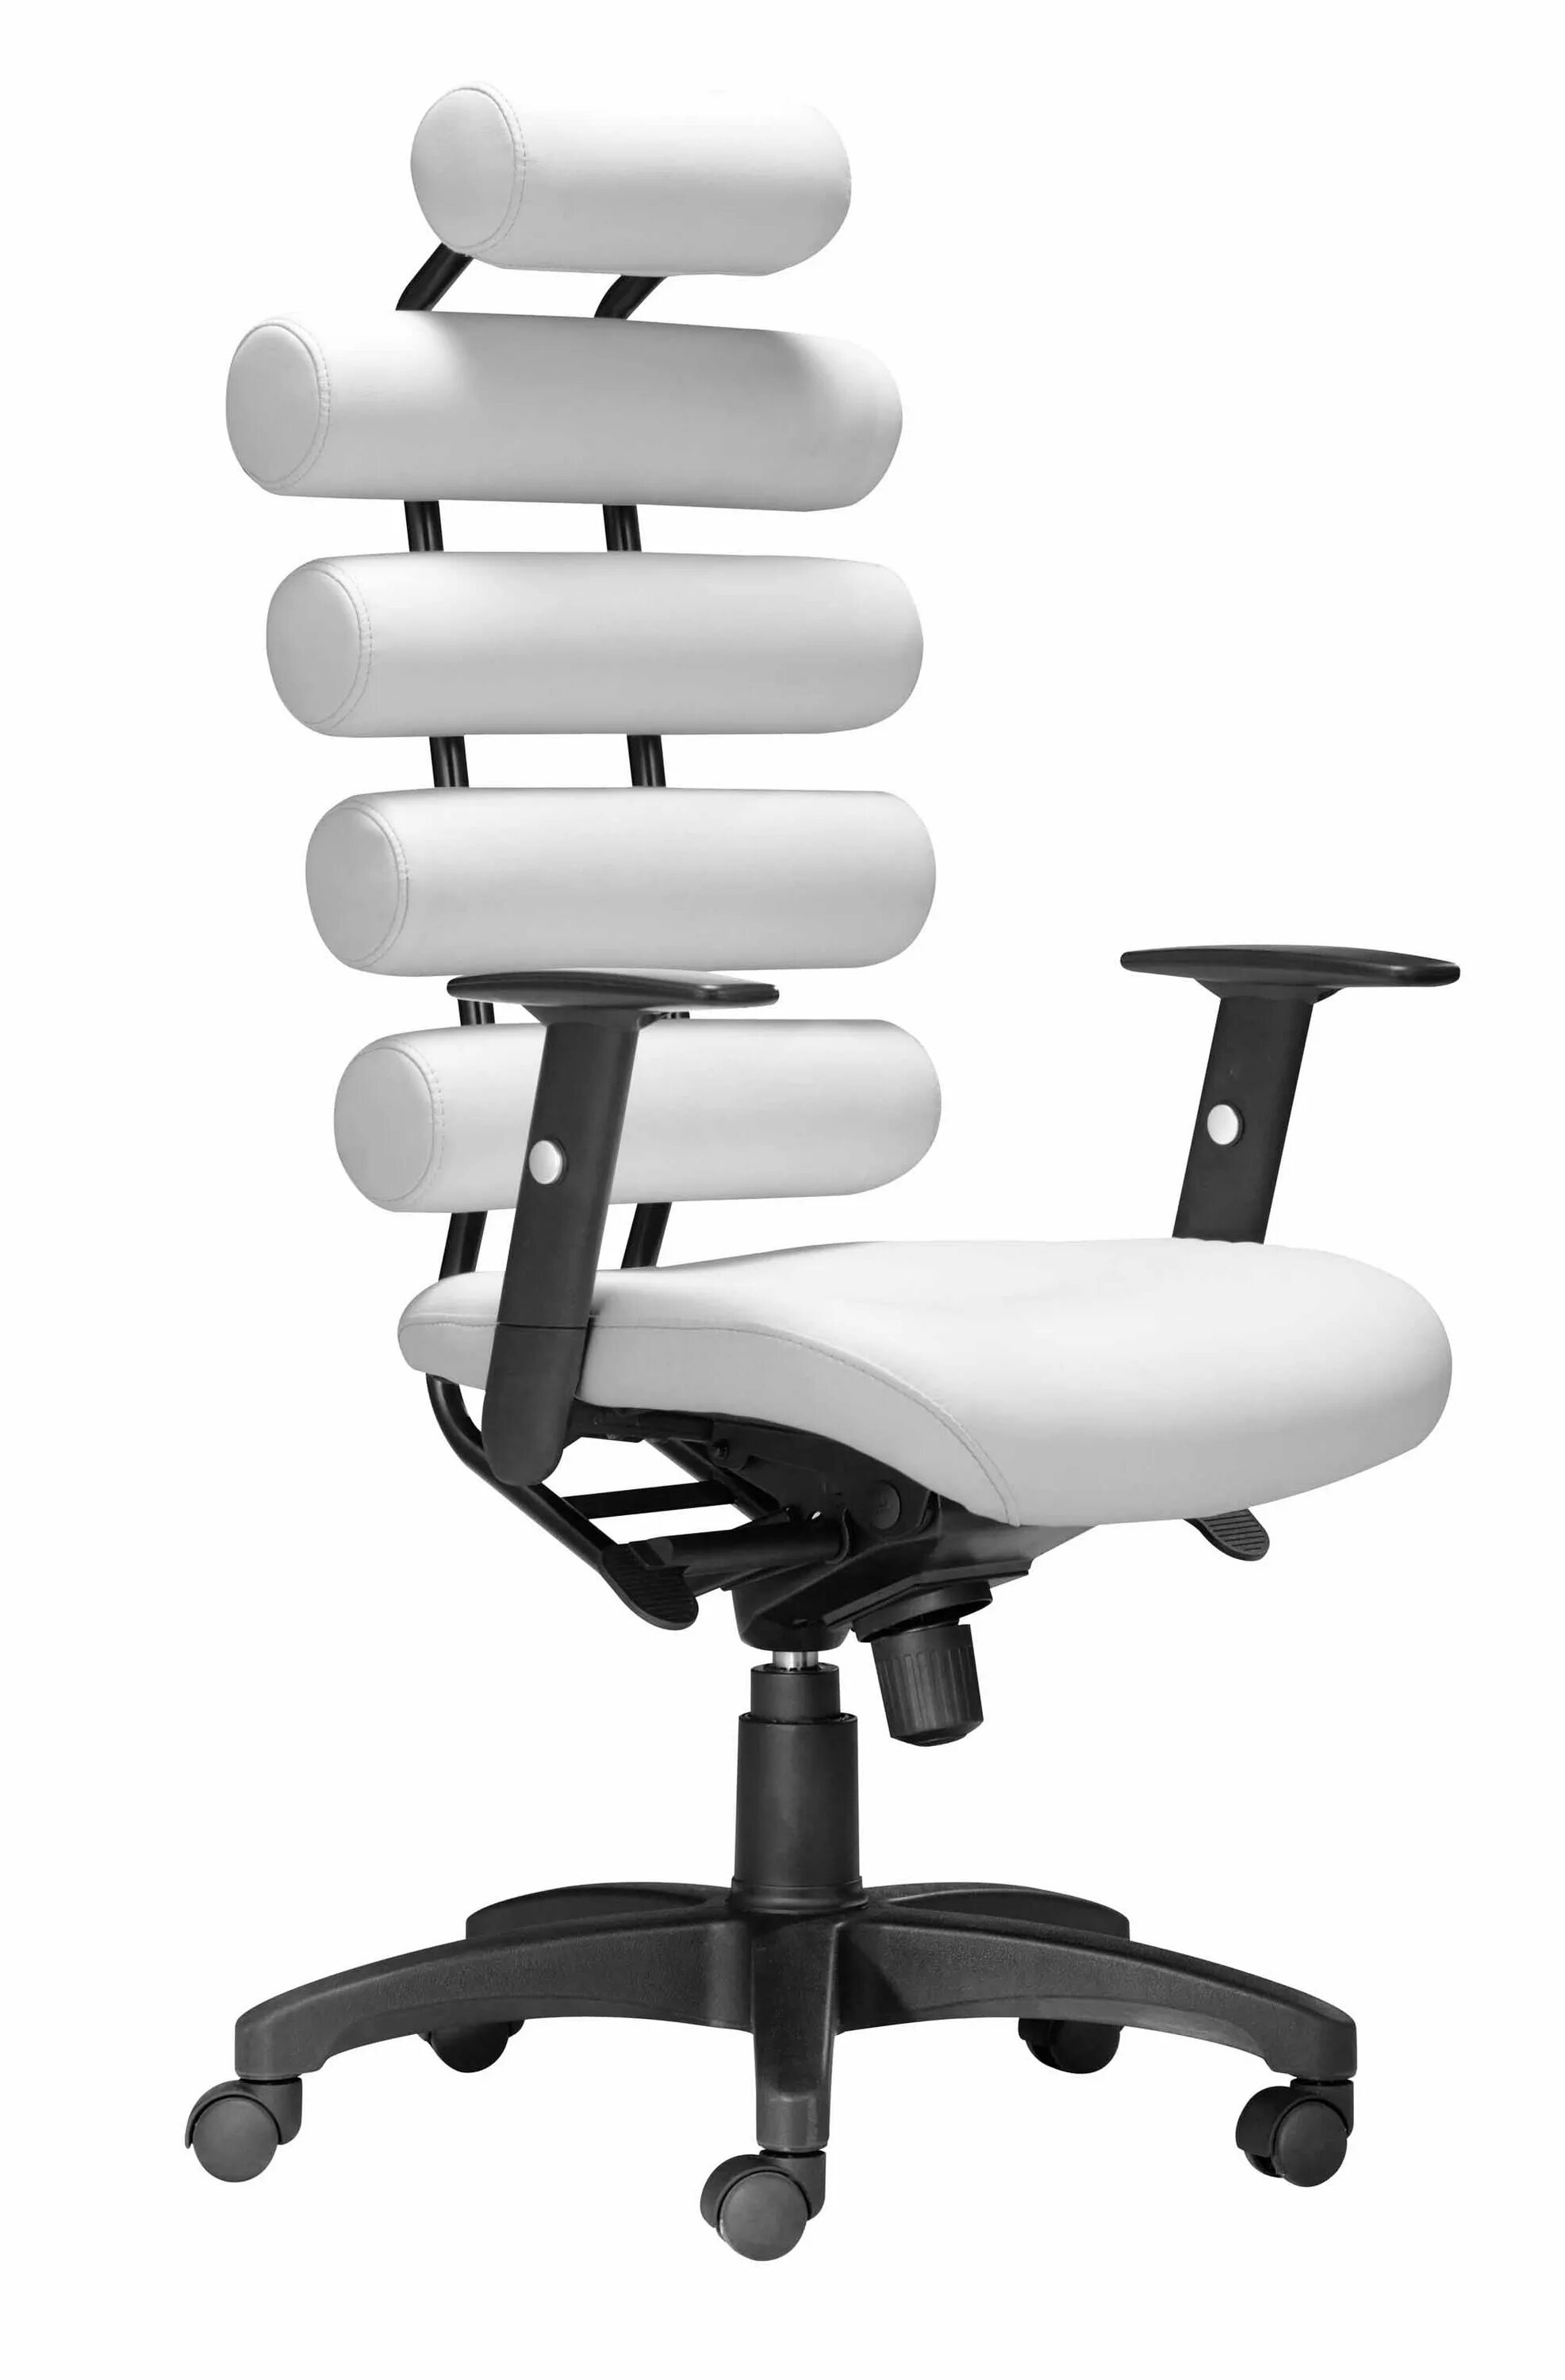 Офисное кресло купить в москве inmyspace ru. Leixin офисное кресло. Ортопедическое кресло enter Office Enigma ч. Офисное кресло Колин White. Офисное компьютерное кресло Viva 937f.